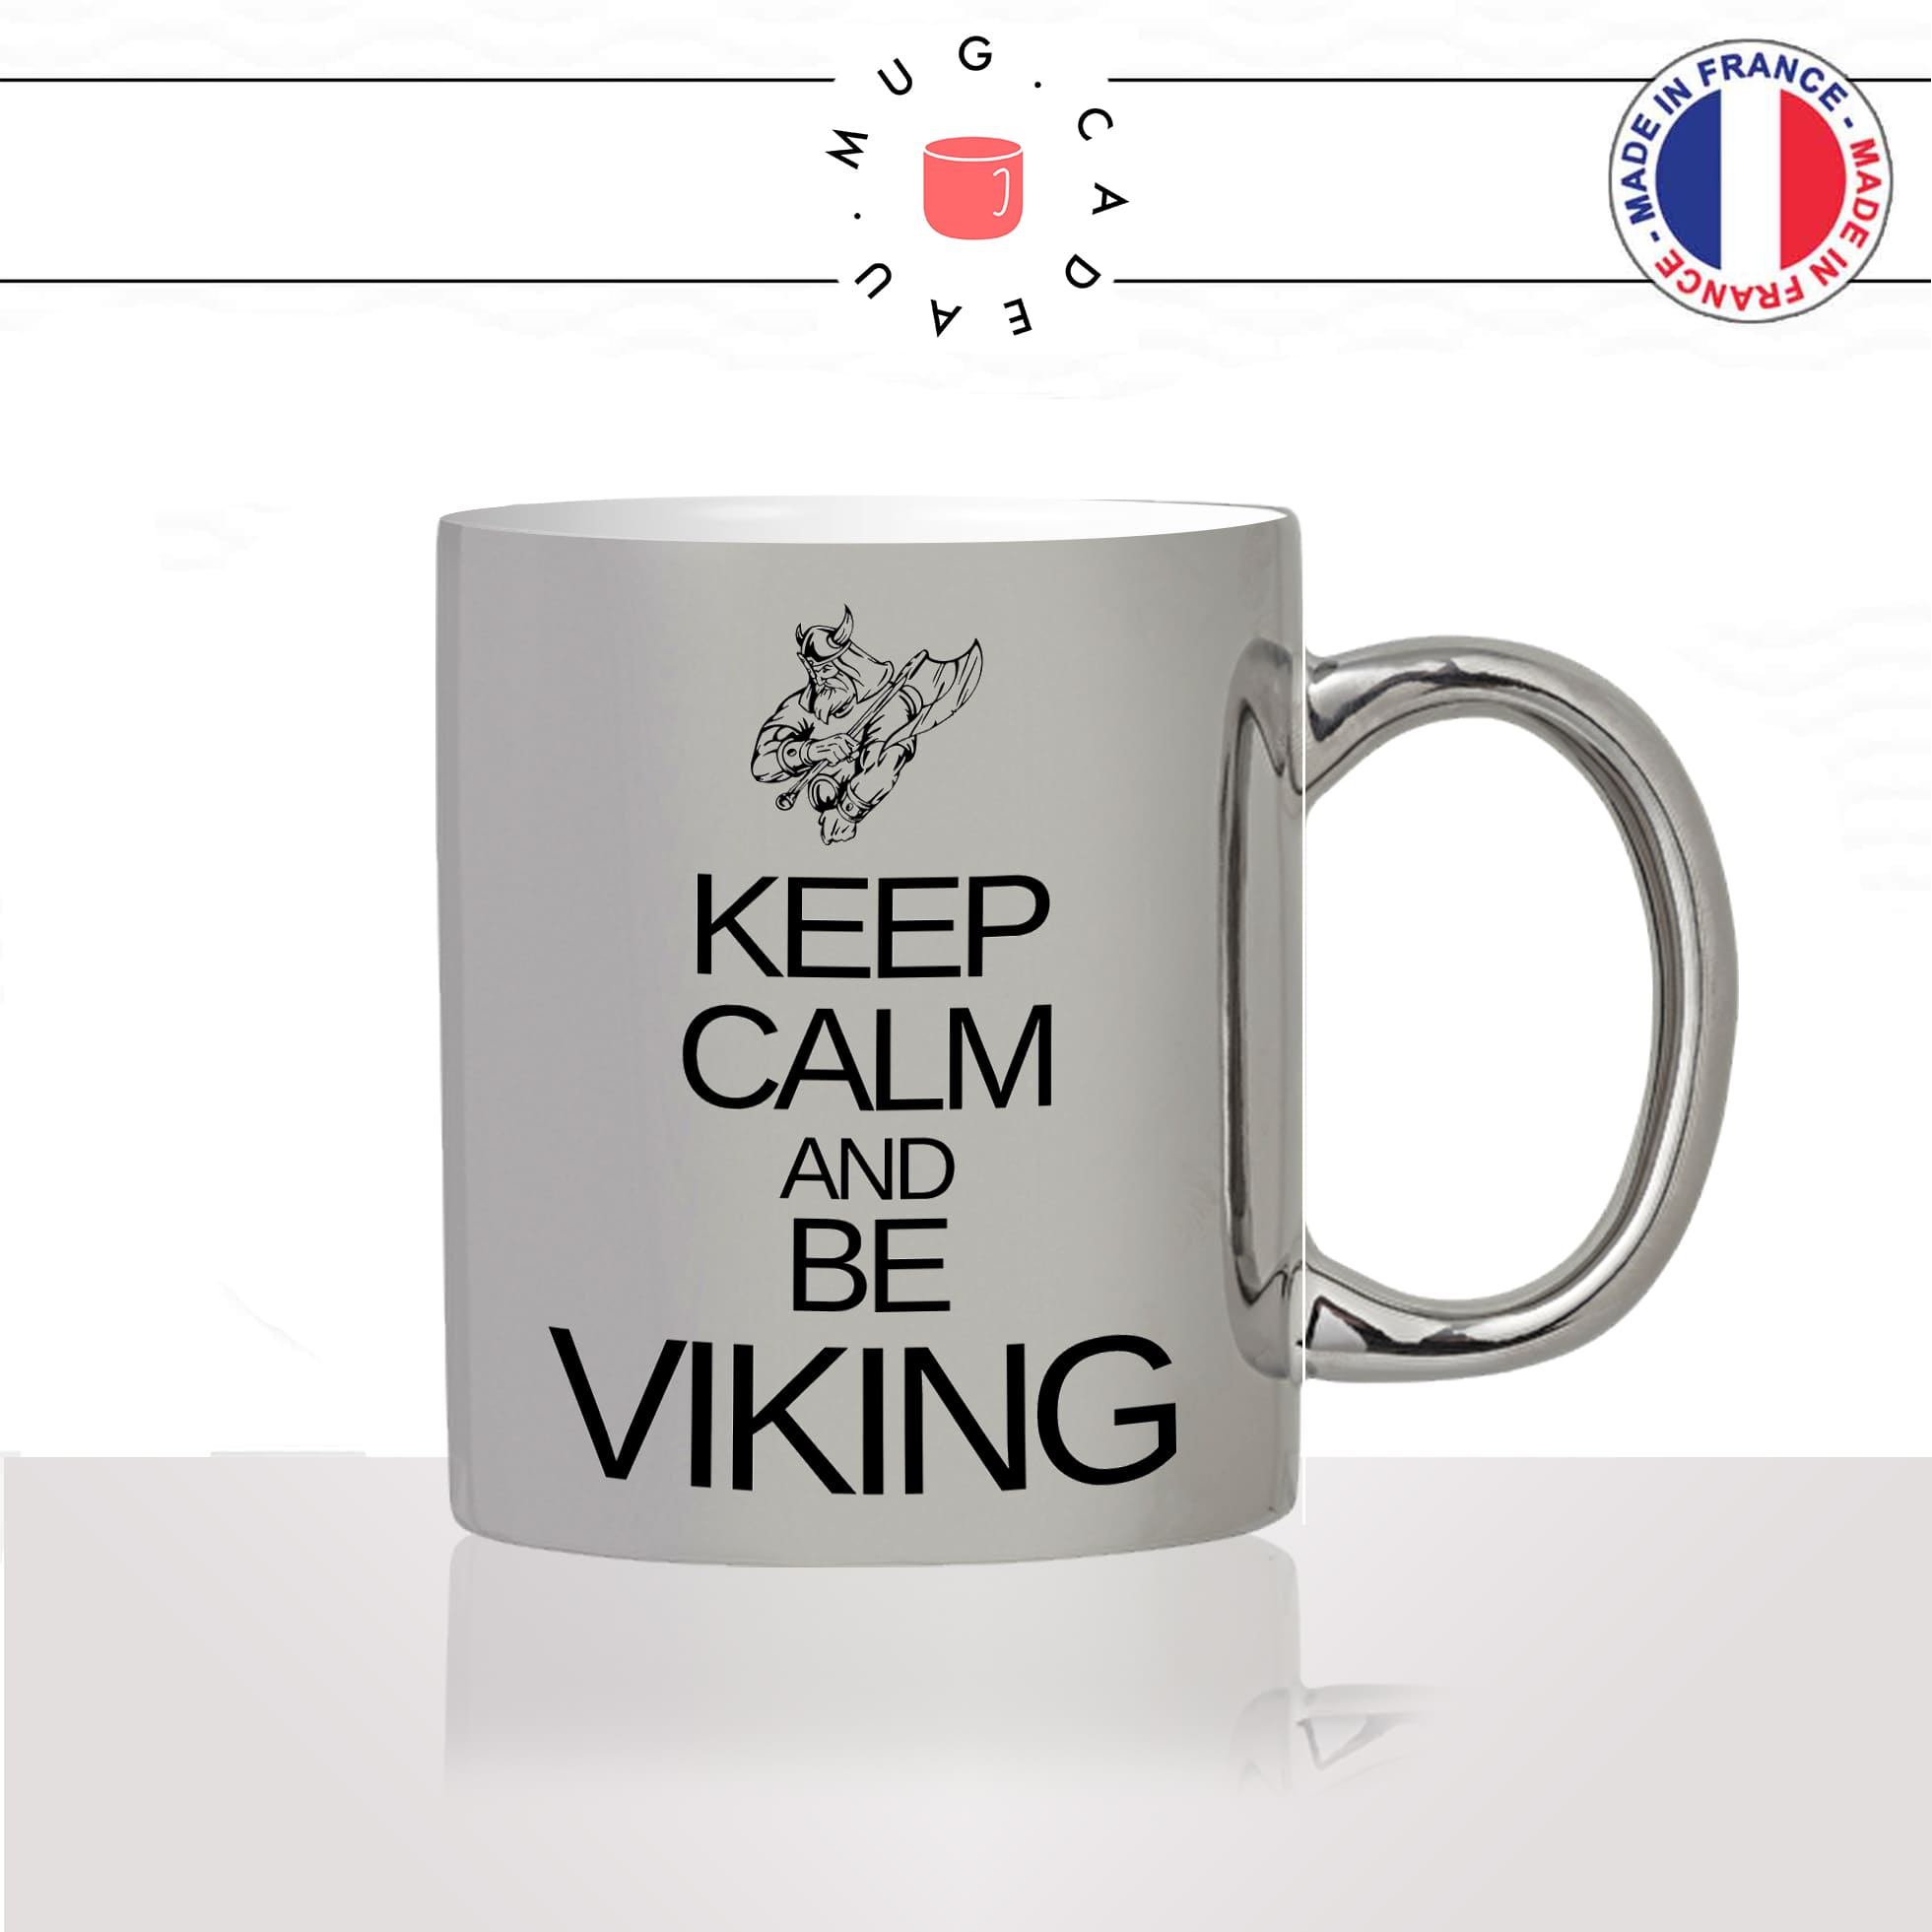 mug-tasse-argent-argenté-silver-keep-calm-and-be-viking-normand-nord-man-homme-série-stylé-humour-idée-cadeau-fun-cool-café-thé2